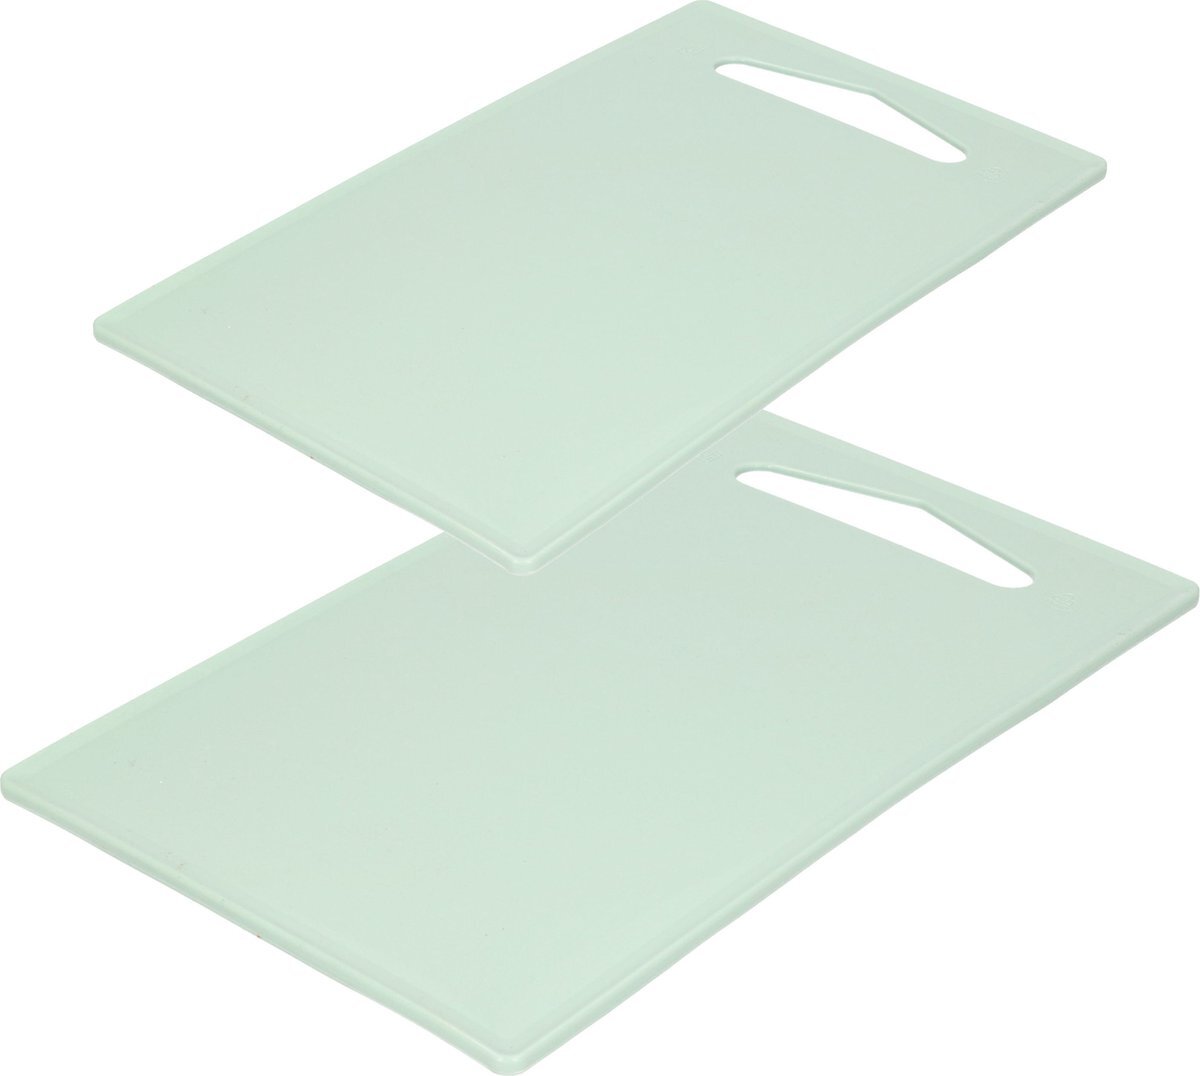 Forte Plastics Kunststof snijplanken set van 2x stuks mintgroen 27 x 16 en 36 x 24 cm - Keuken/koken accessoires